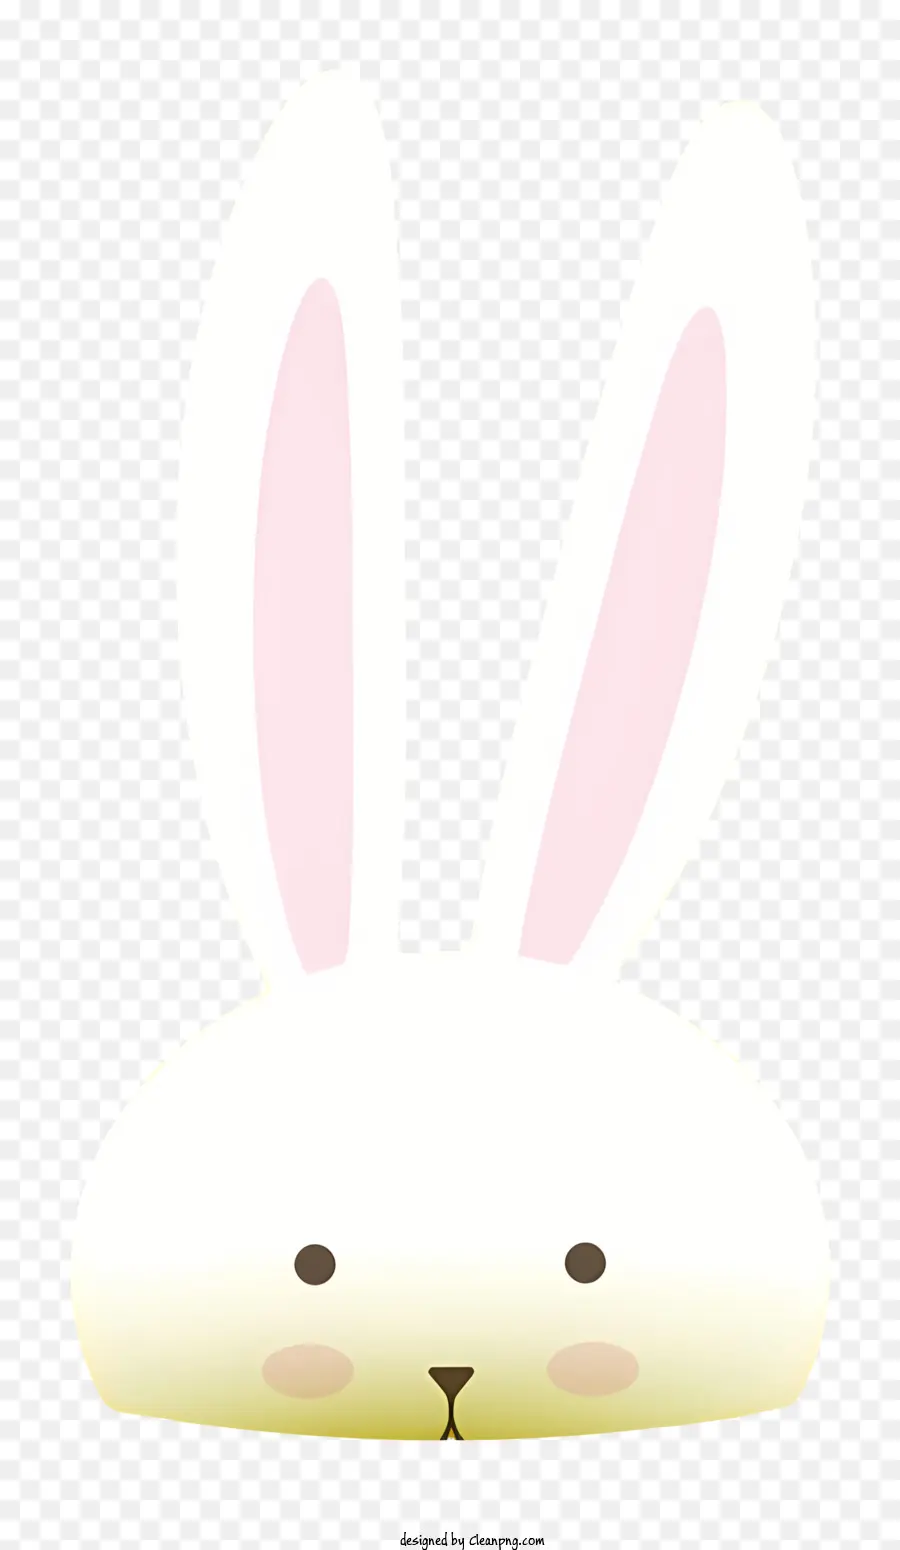 Hasengesicht weißer Kaninchenrosa Augen auf den Hinterbeinen hielten die Ohren auf - Weißer Kaninchen mit rosa Augen, wachsam stehen